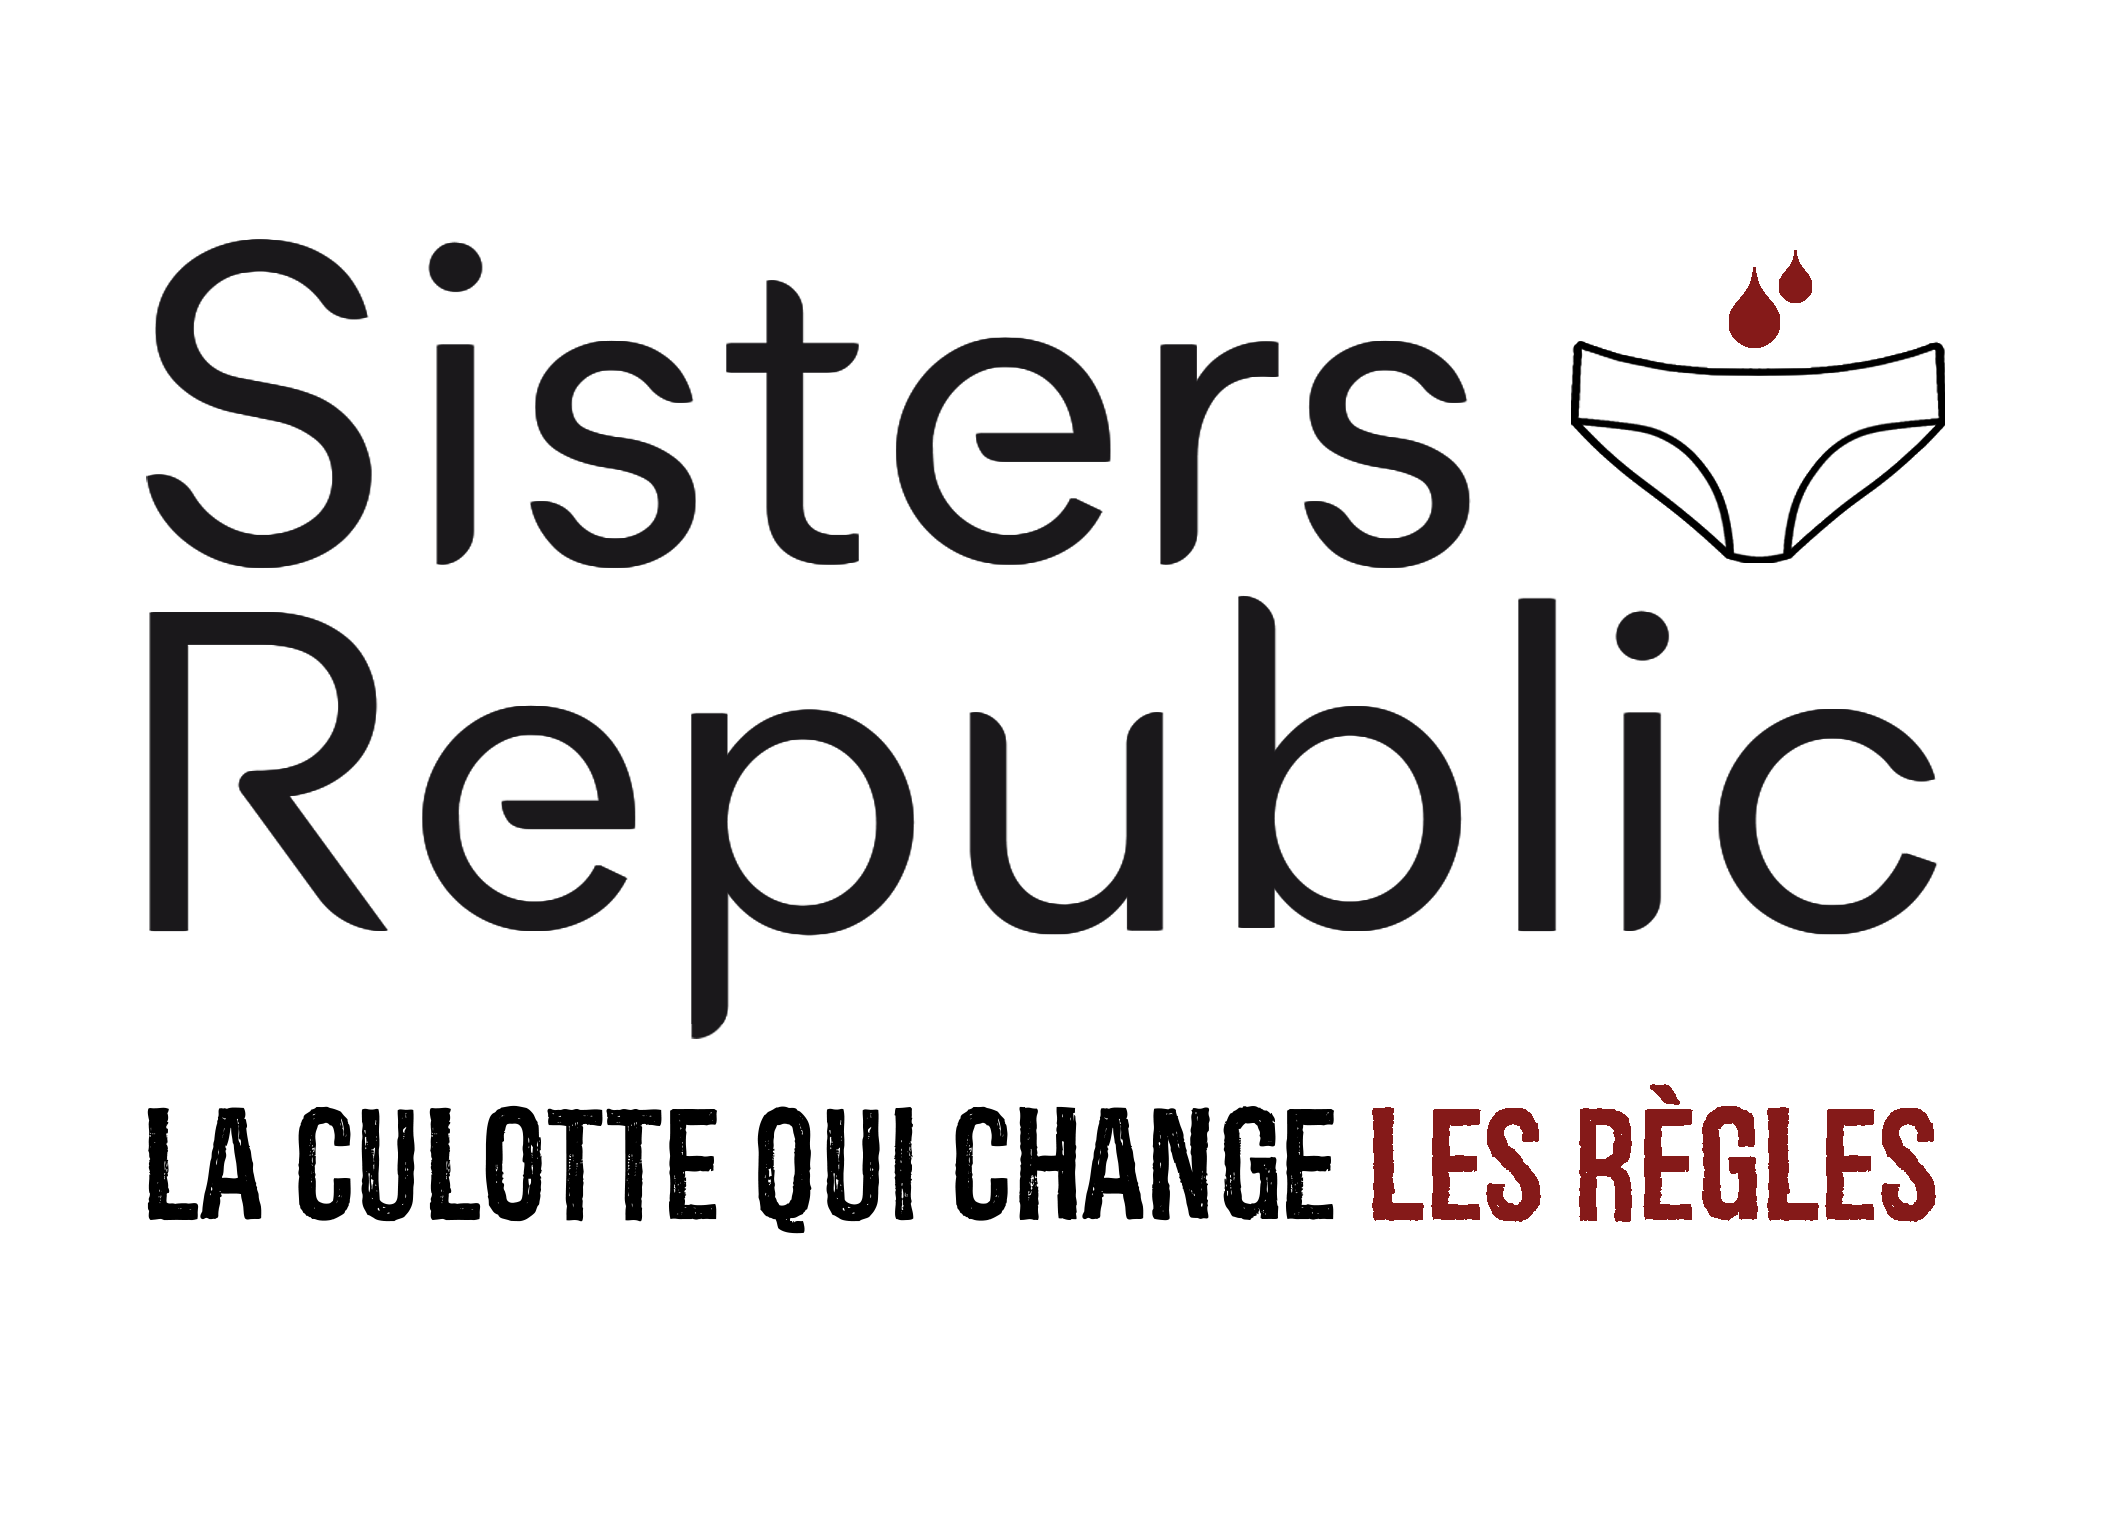 icone-sisters-republic-la-culotte-qui-change-les-regles-hd-2